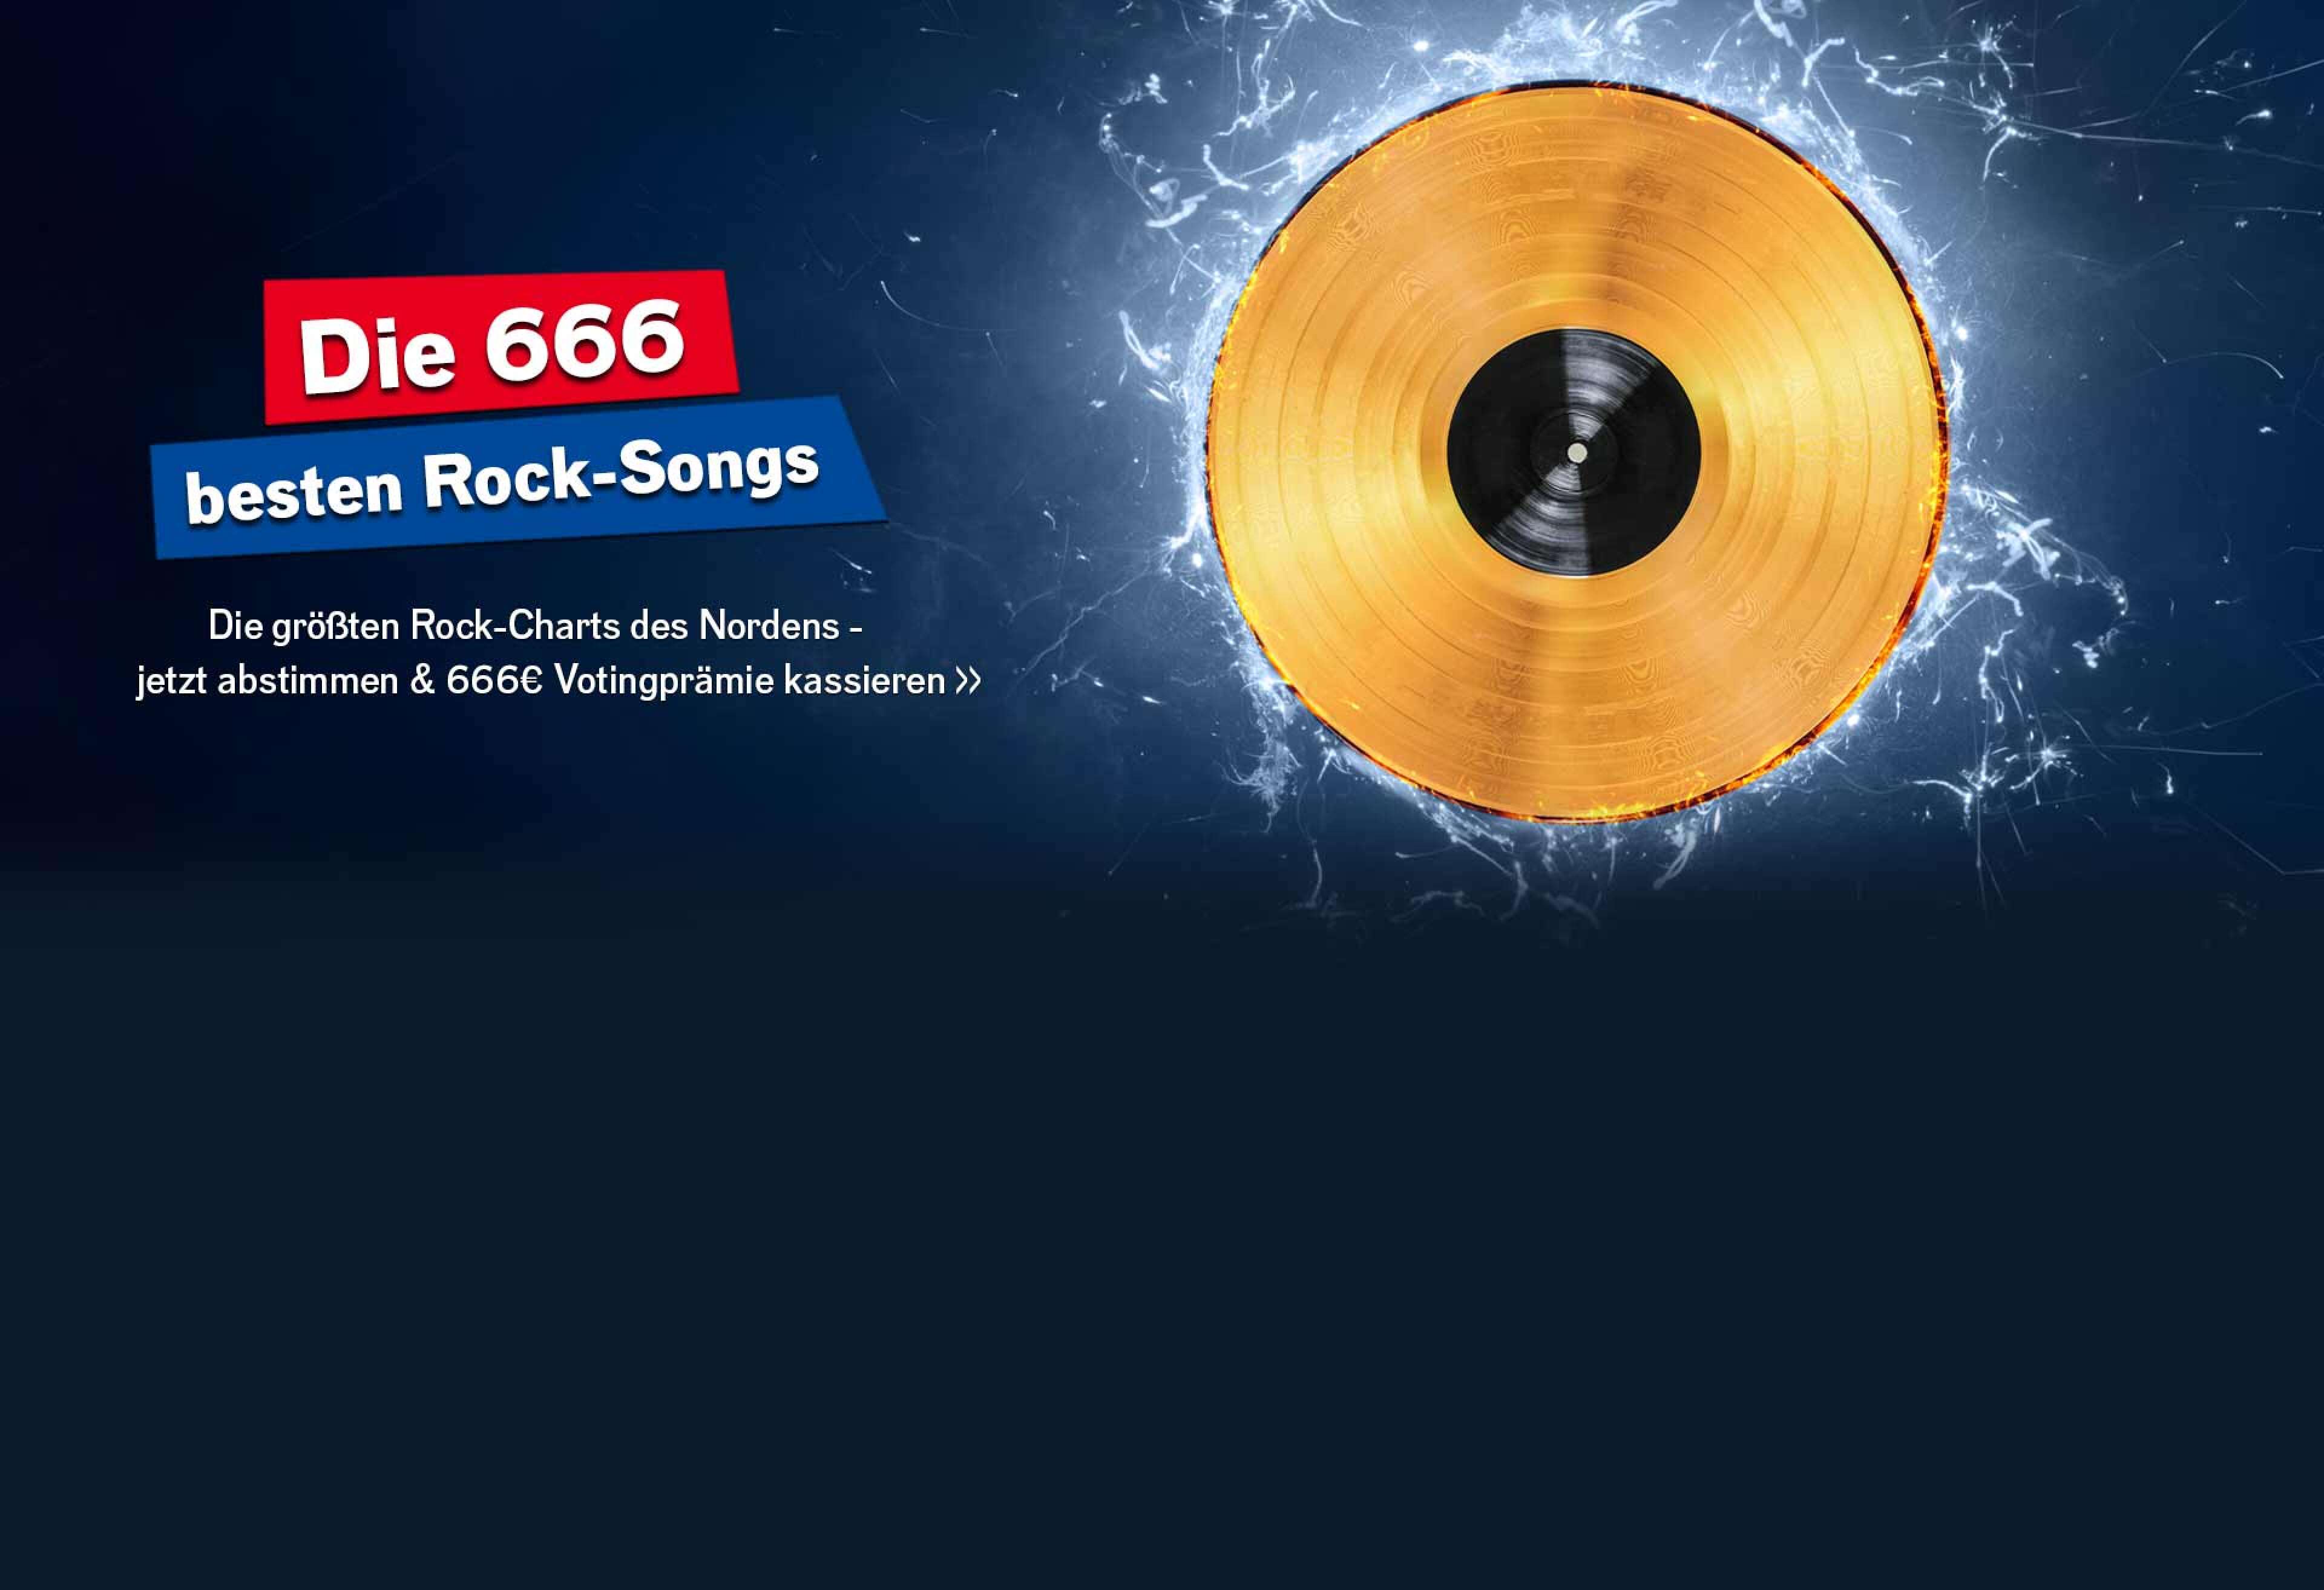 Eine goldene Schallplatte vor blauen Blitzen auf blauem Grund, dazu der Text Die 666 besten Rock-Songs, Die größten Rock-Charts des Nordens - jetzt abstimmen & 666 Euro Votingprämie kassieren